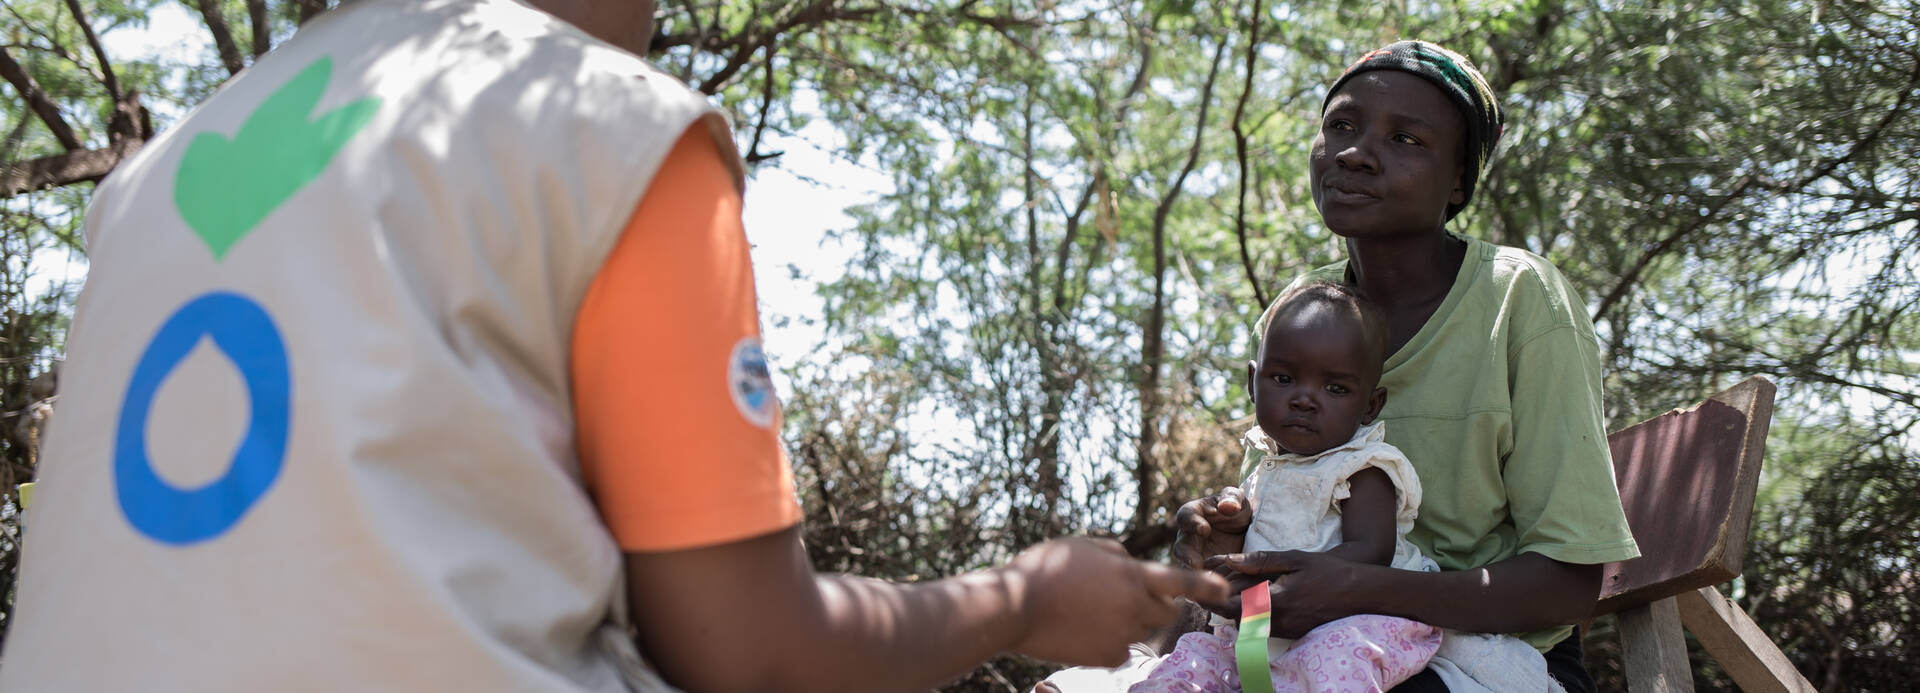 Mitarbeiterin von Aktion gegen den Hunger hilft Mutter und Kind in Kenia